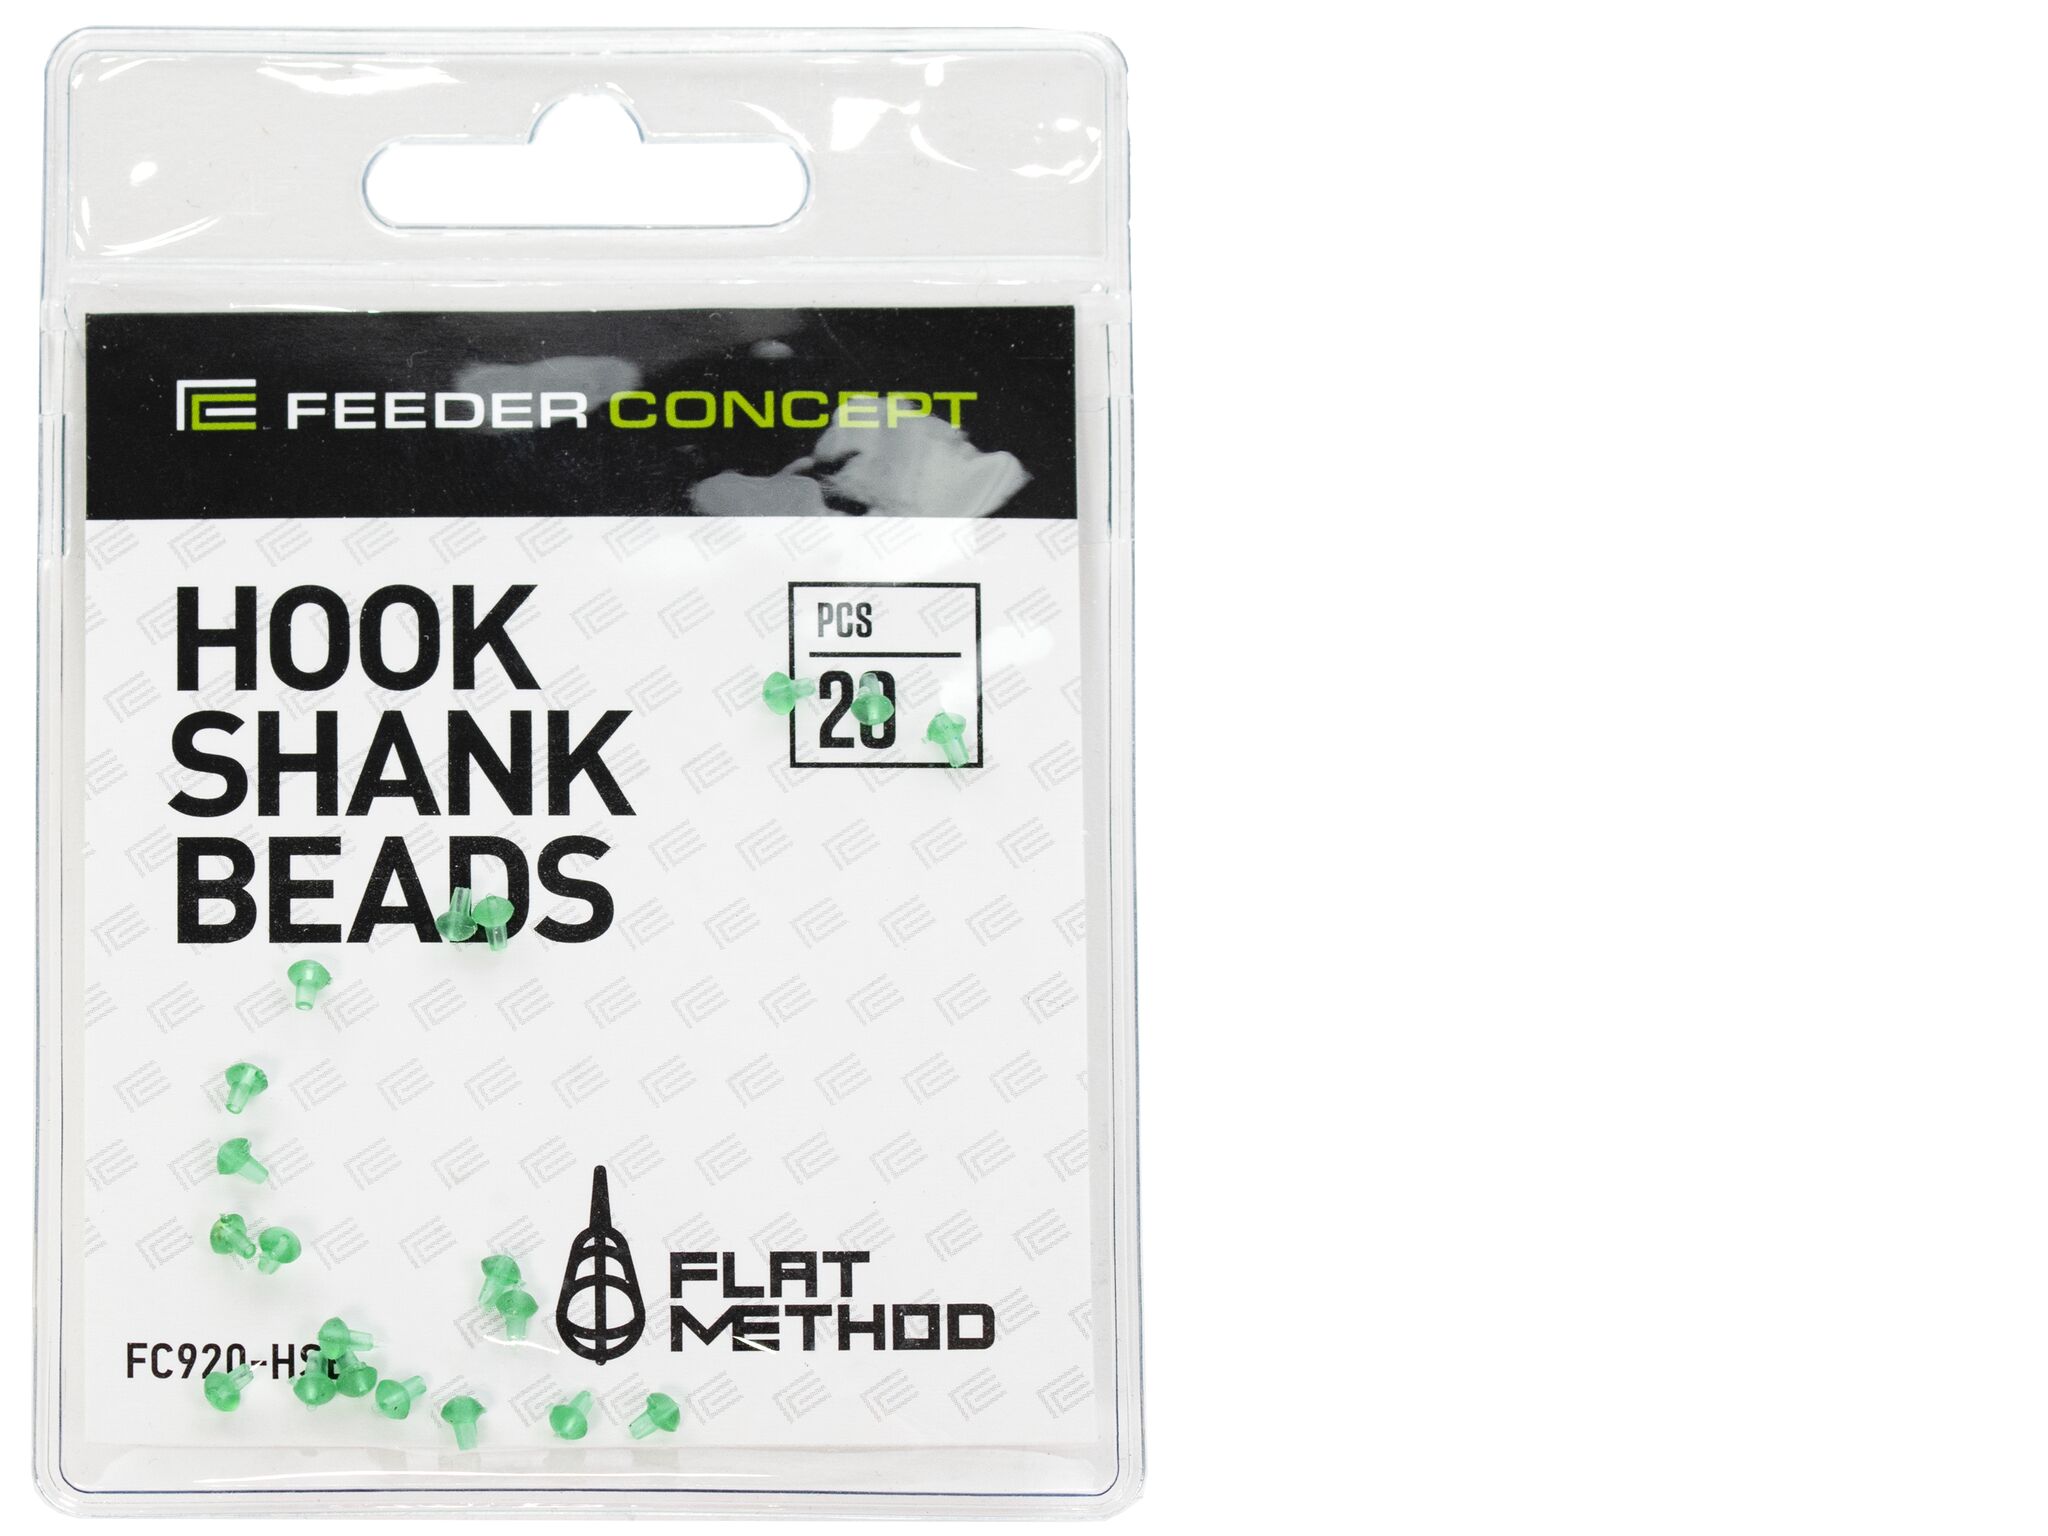 Стопоры на крючок Feeder Concept Flat Method HOOK SHANK BEADS 20шт.